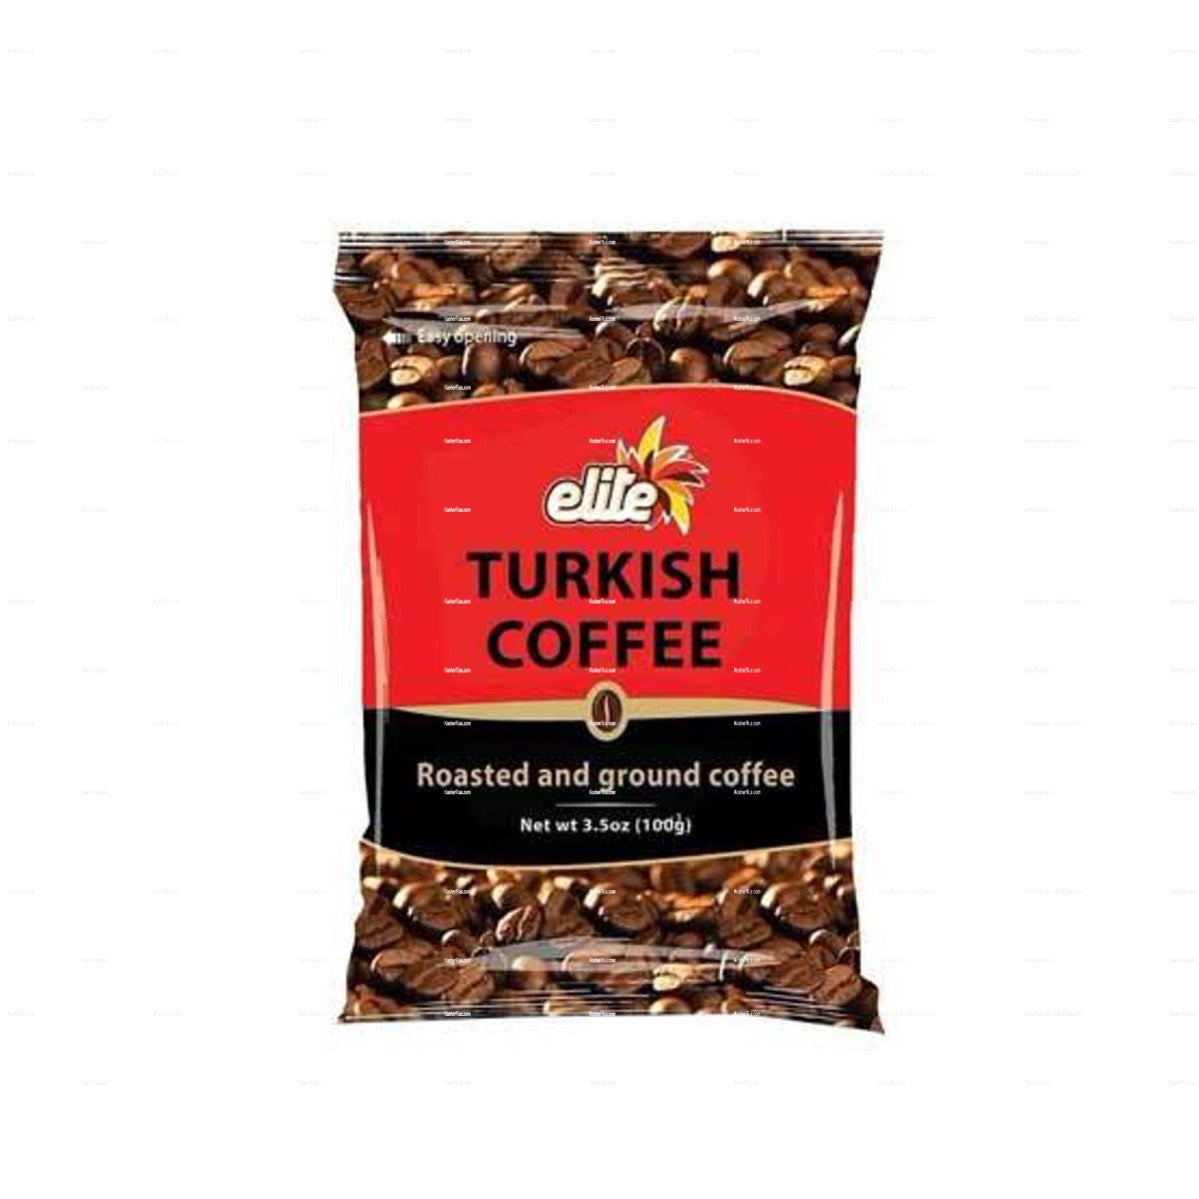 Elite Turkish Coffee Single Serve Bag 7 grams Pack of 24